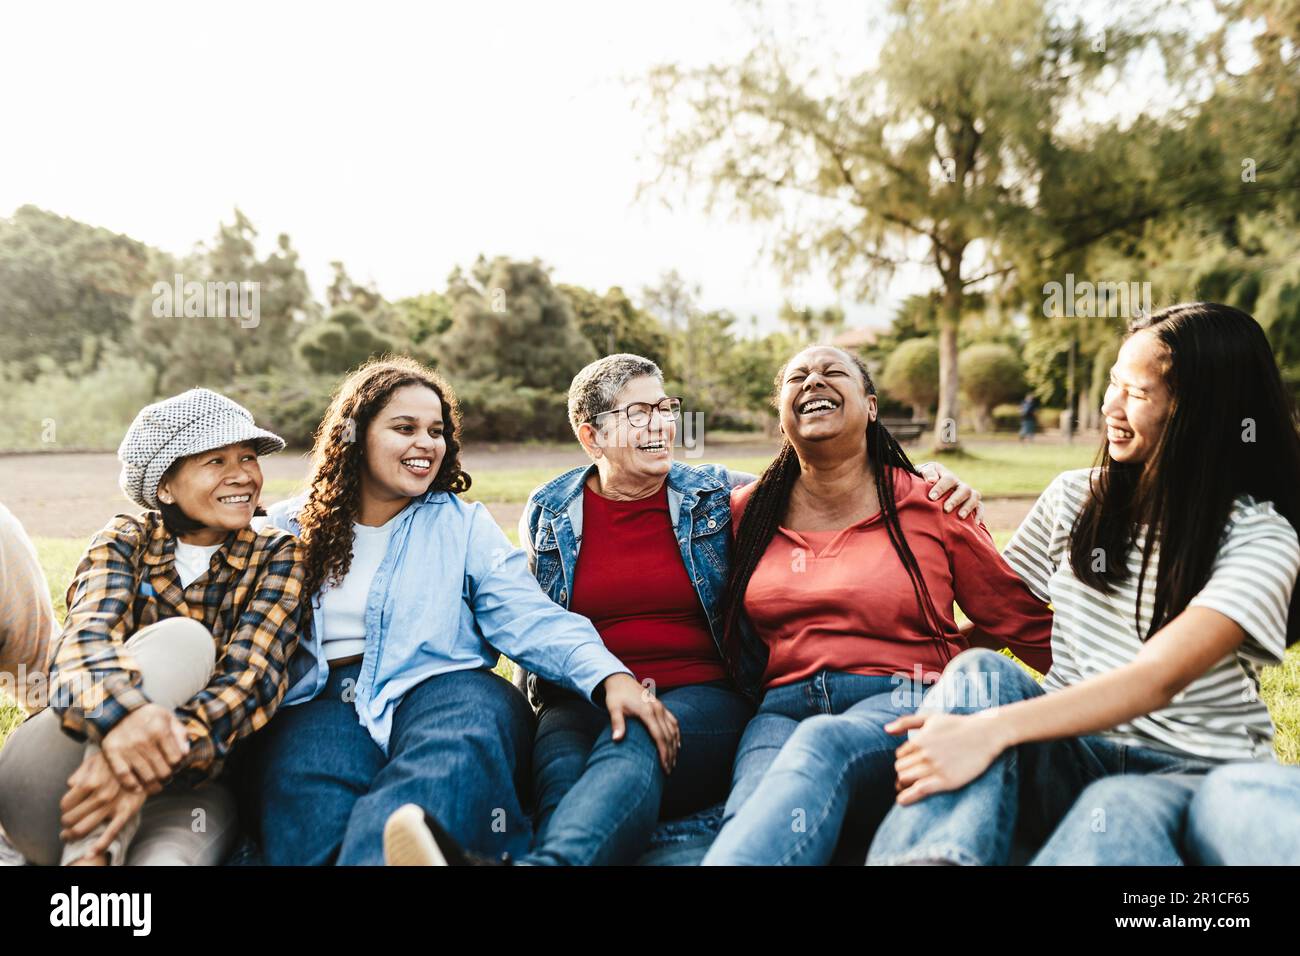 Glückliche Mehrgenerationengruppe von Frauen mit unterschiedlichen ethnischen Zugehörigkeiten, die Spaß haben, in einem öffentlichen Park auf dem Gras zu sitzen - Empowerment-Konzept für Frauen Stockfoto